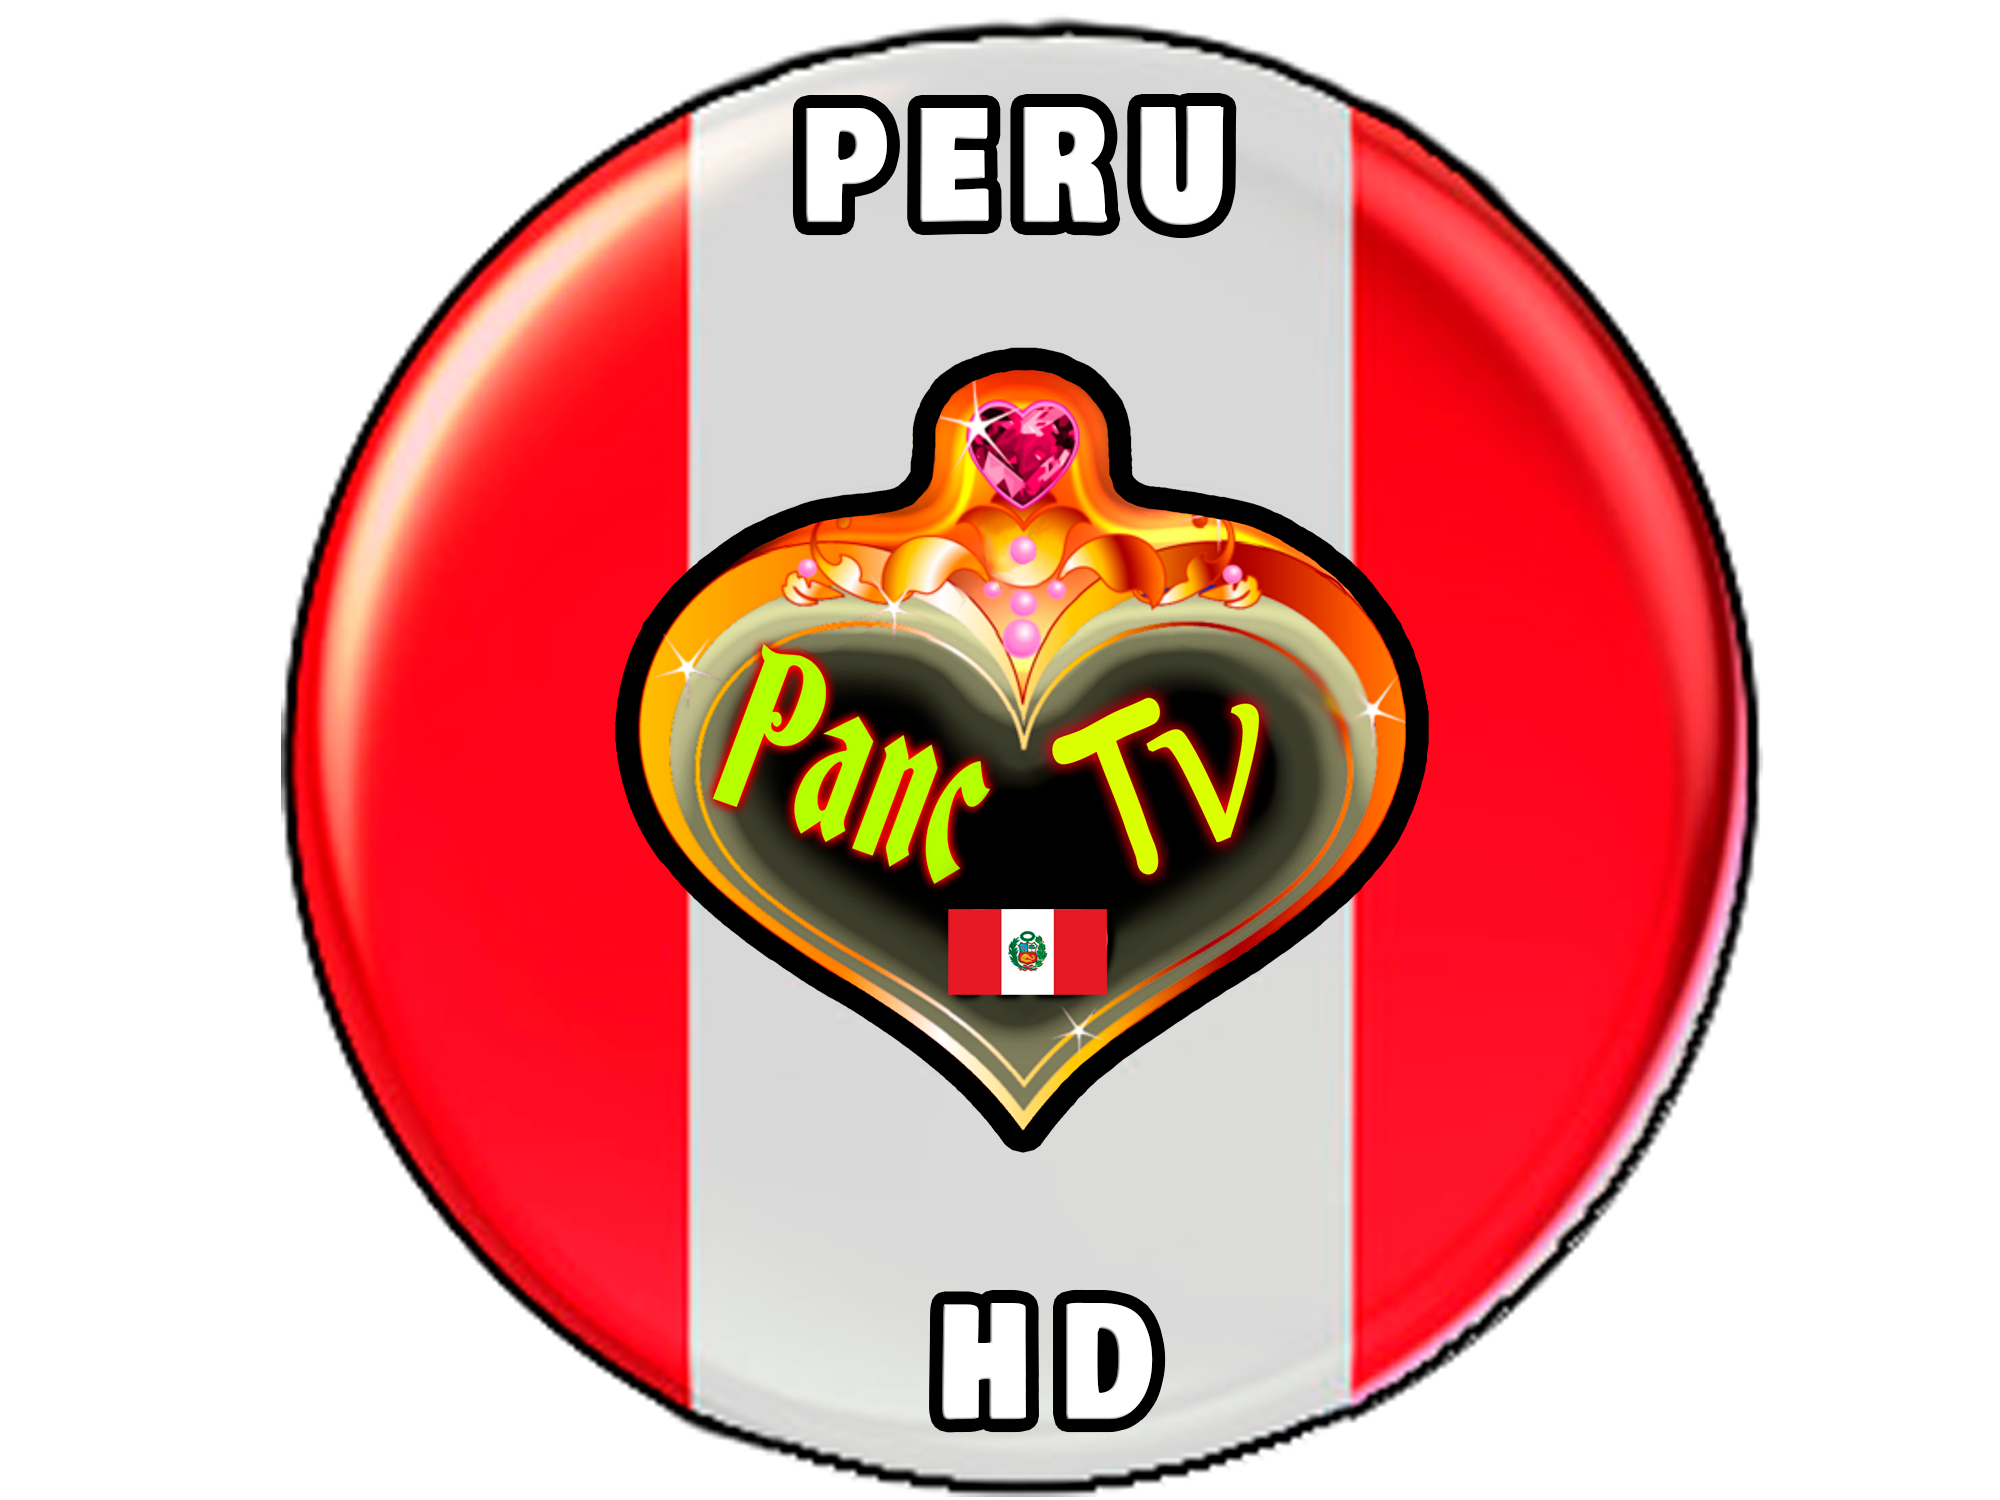 PANC TV PERU